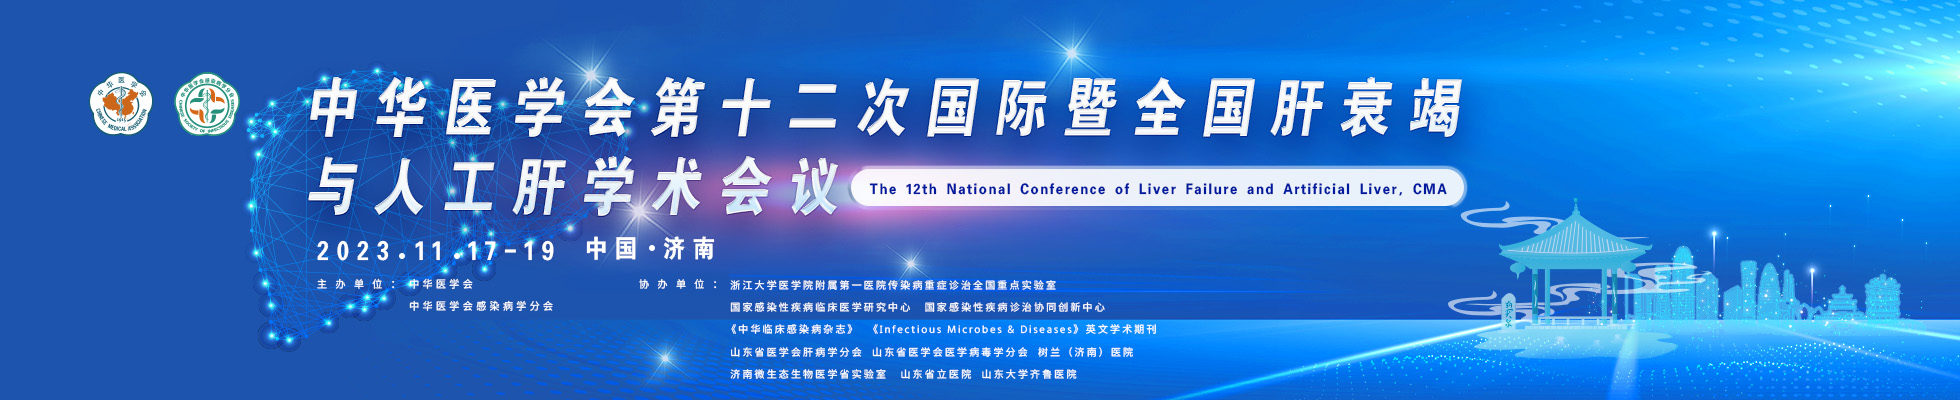 中华医学会第十二次国际暨全国肝衰竭与人工肝学术会议